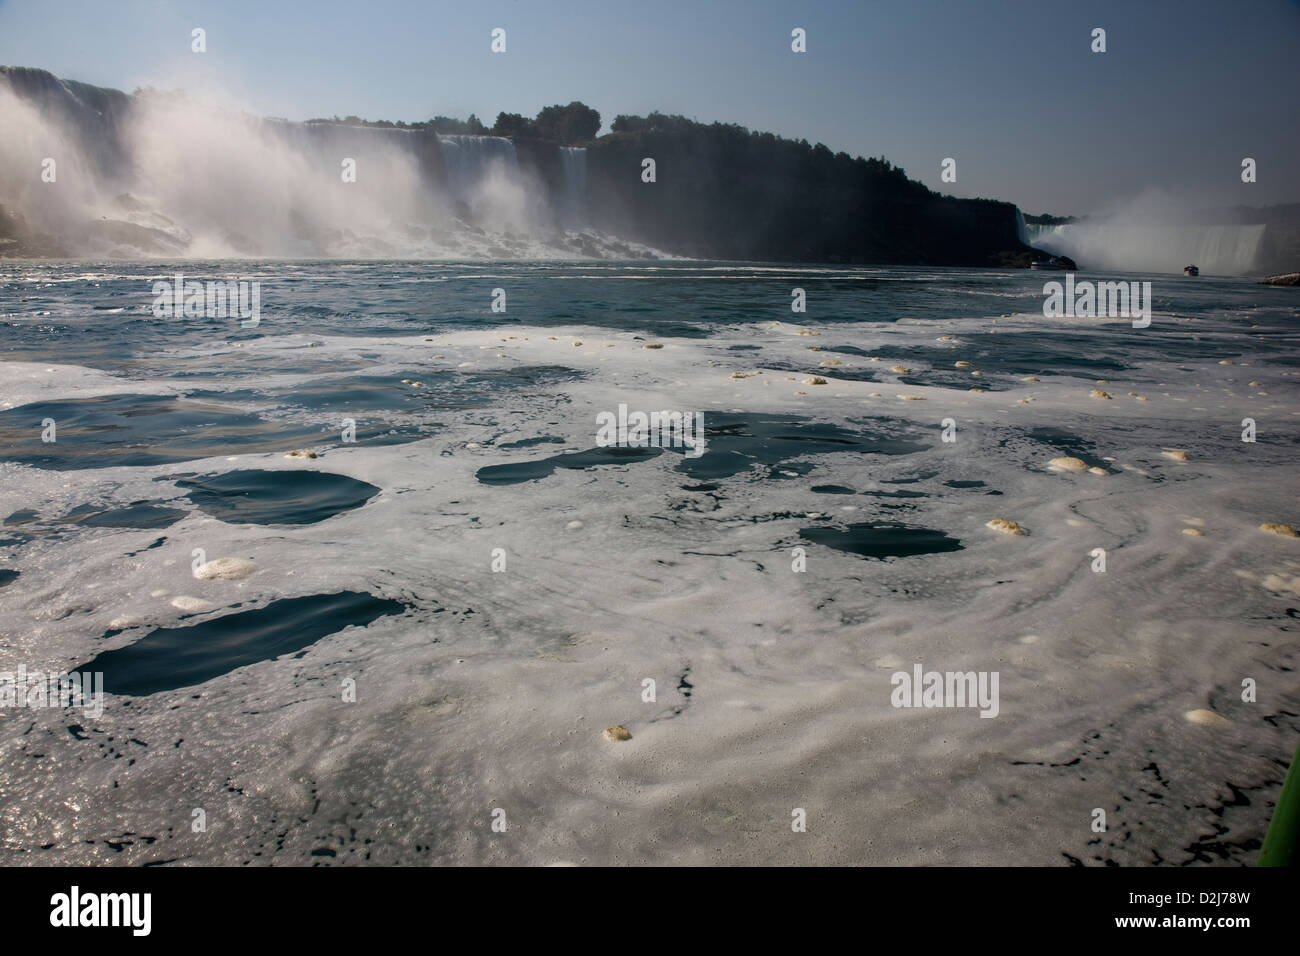 L'écume, des bulles et de la mousse sur la surface de l'eau de la rivière, Niagara Falls, Canada Banque D'Images